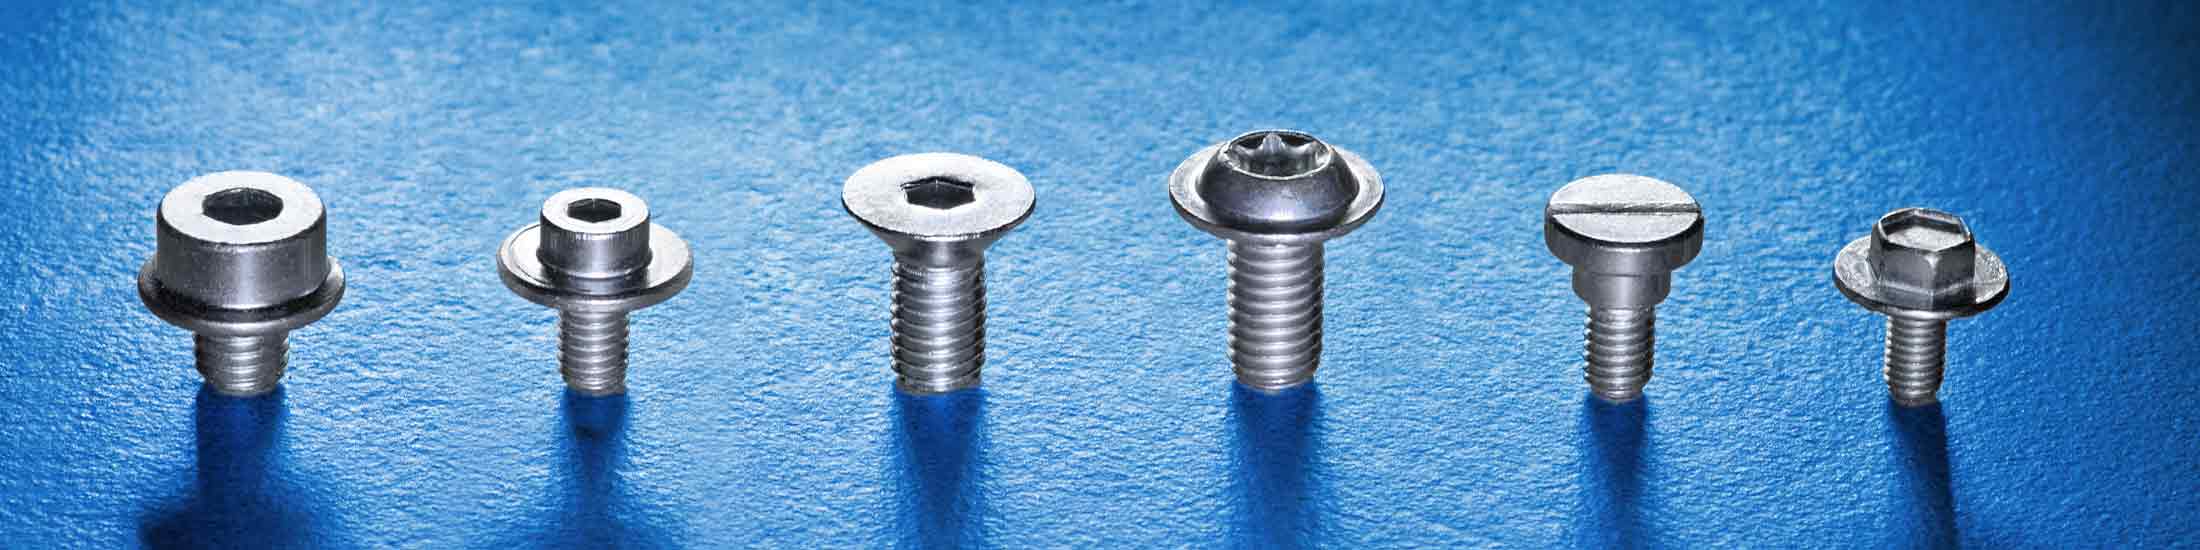 Verzinkte Schrauben bieten durch ihre Beschichtung einen deutlich höheren Schutz gegen Korrosion als normale Stahlschrauben.